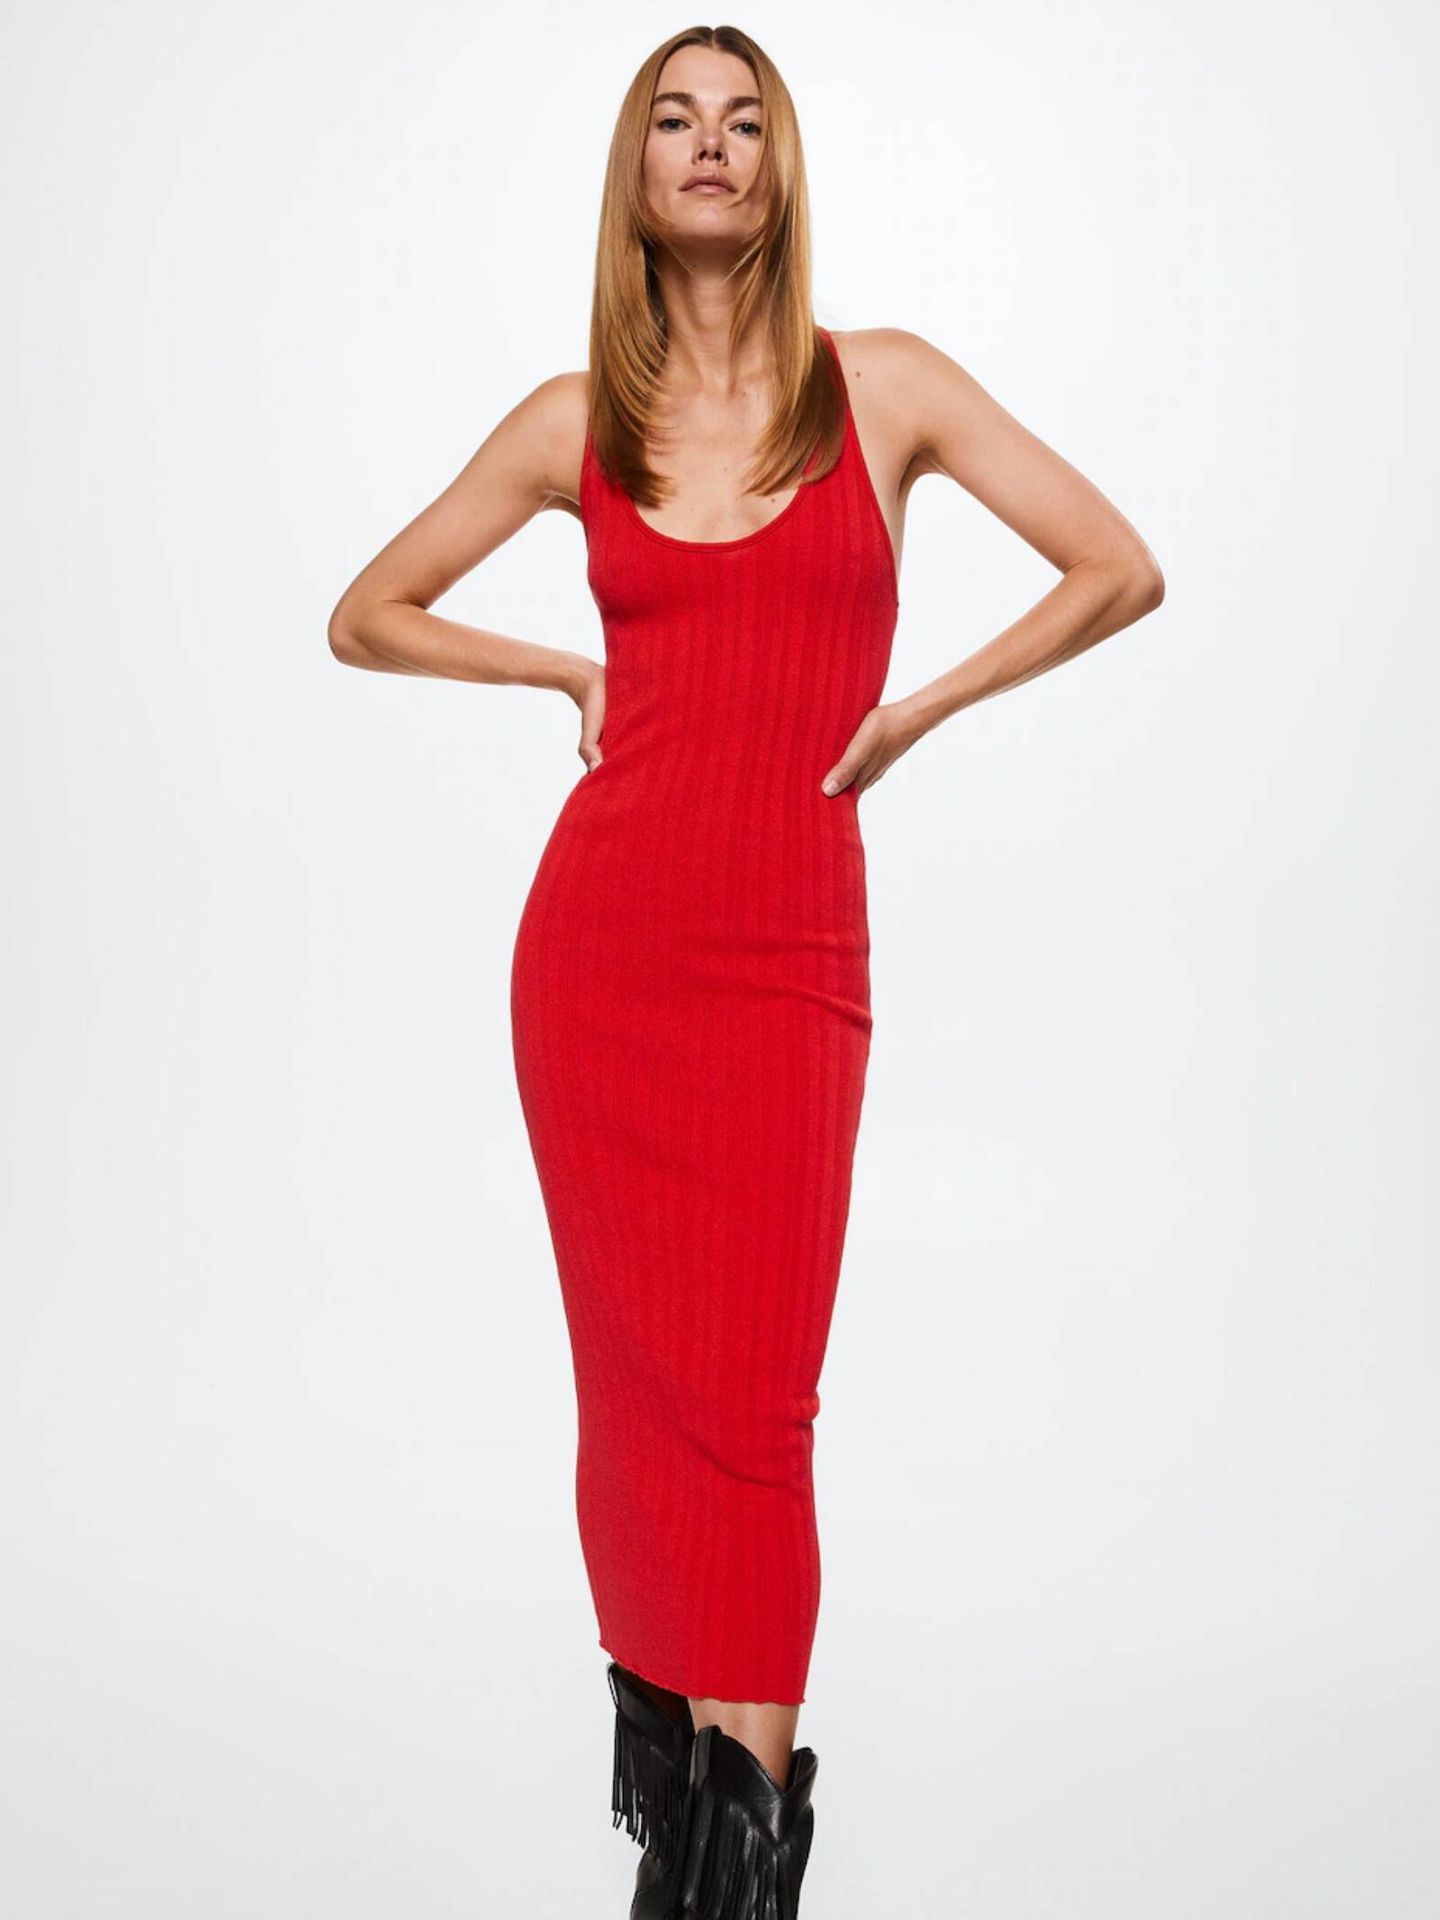 Mus desierto basura Mango levanta pasiones con sus 3 nuevos vestidos rojos por menos de 50 euros